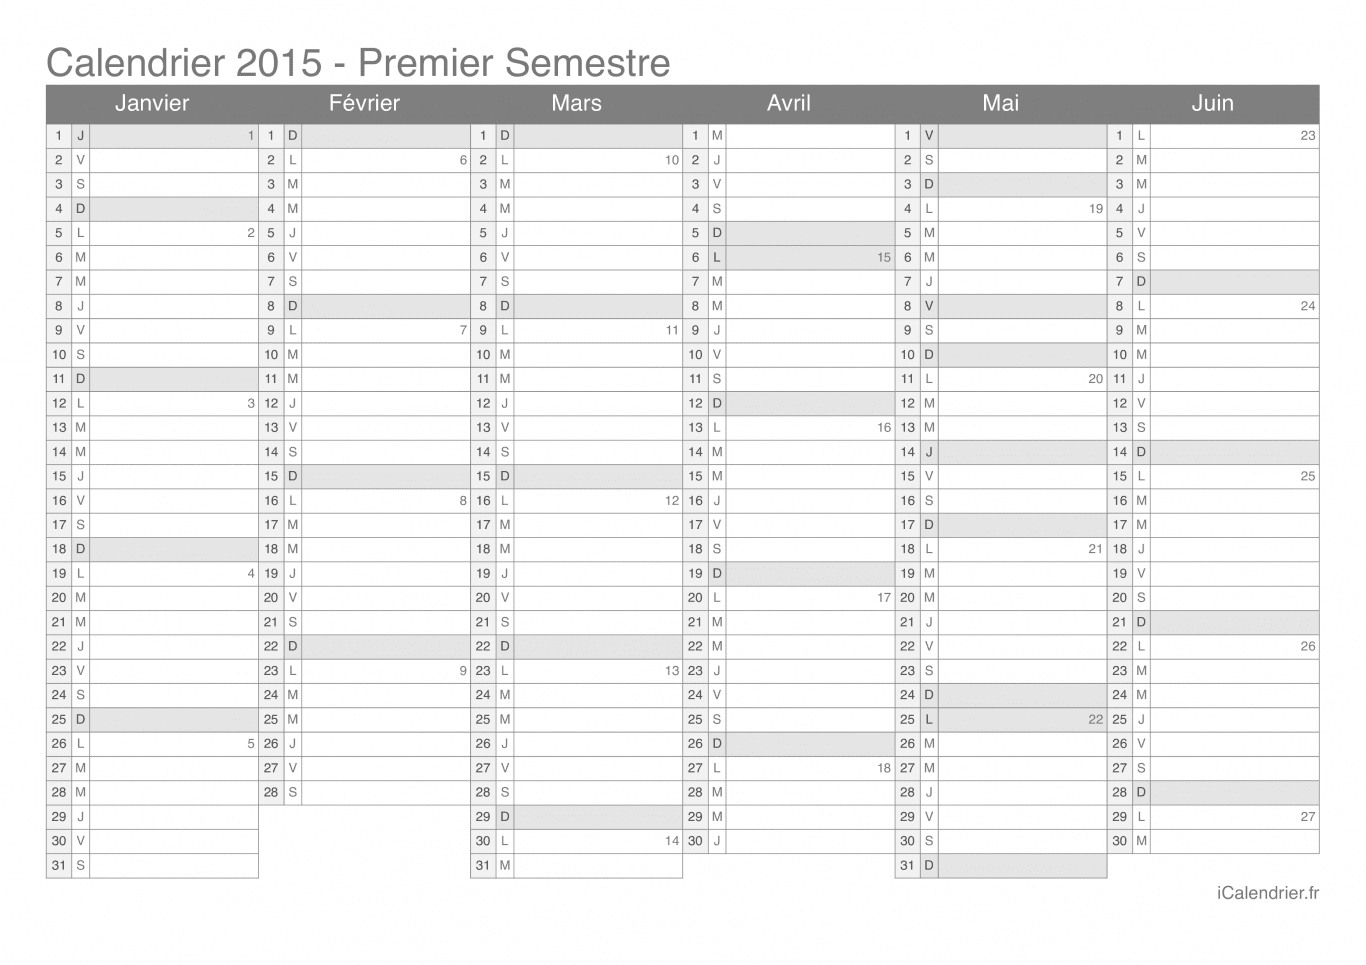 Calendrier par semestre avec numéros des semaines 2015